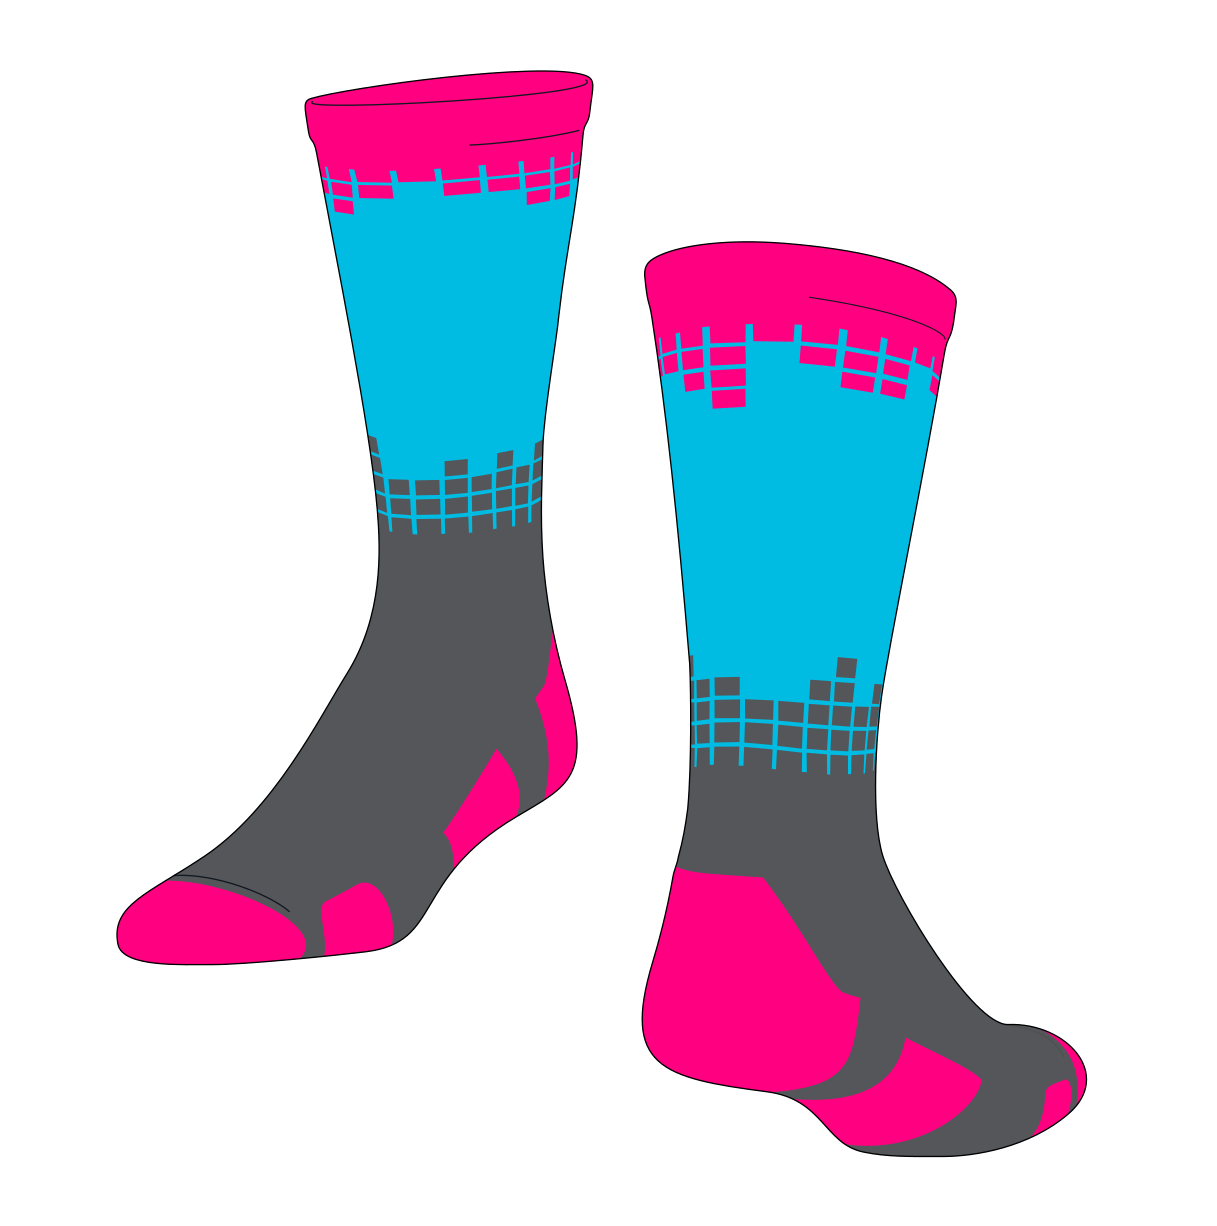 Sock knitted sock